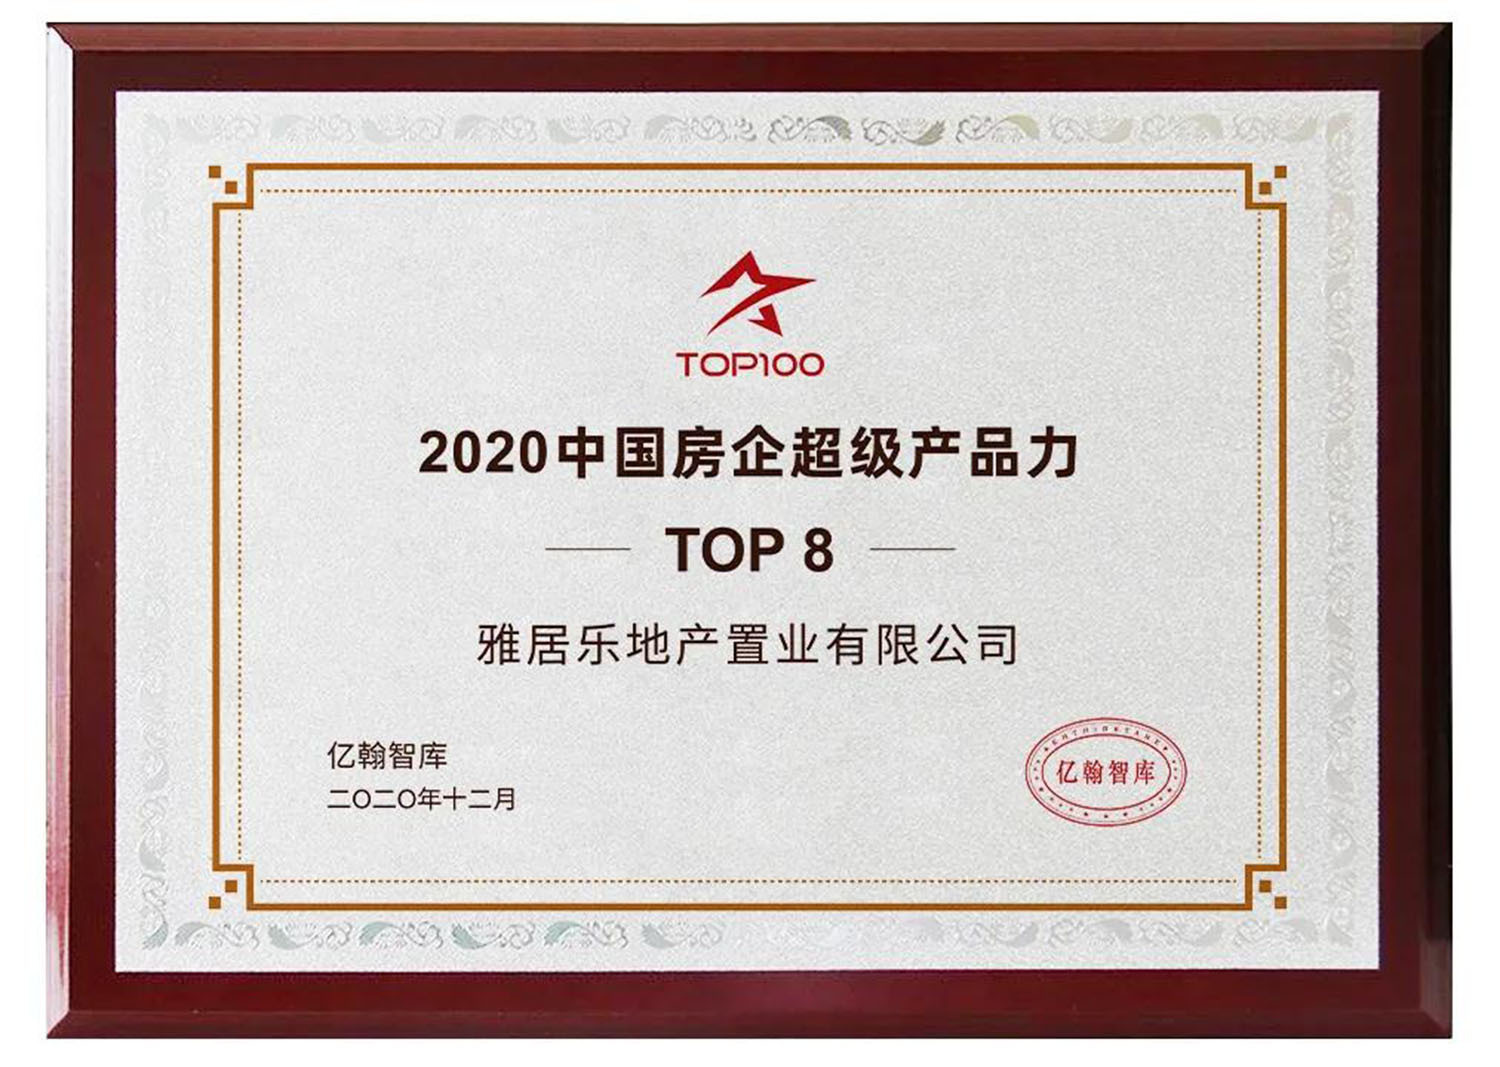 雅居乐地产荣获「2020中国房企超级产品力TOP100第八名」大奖